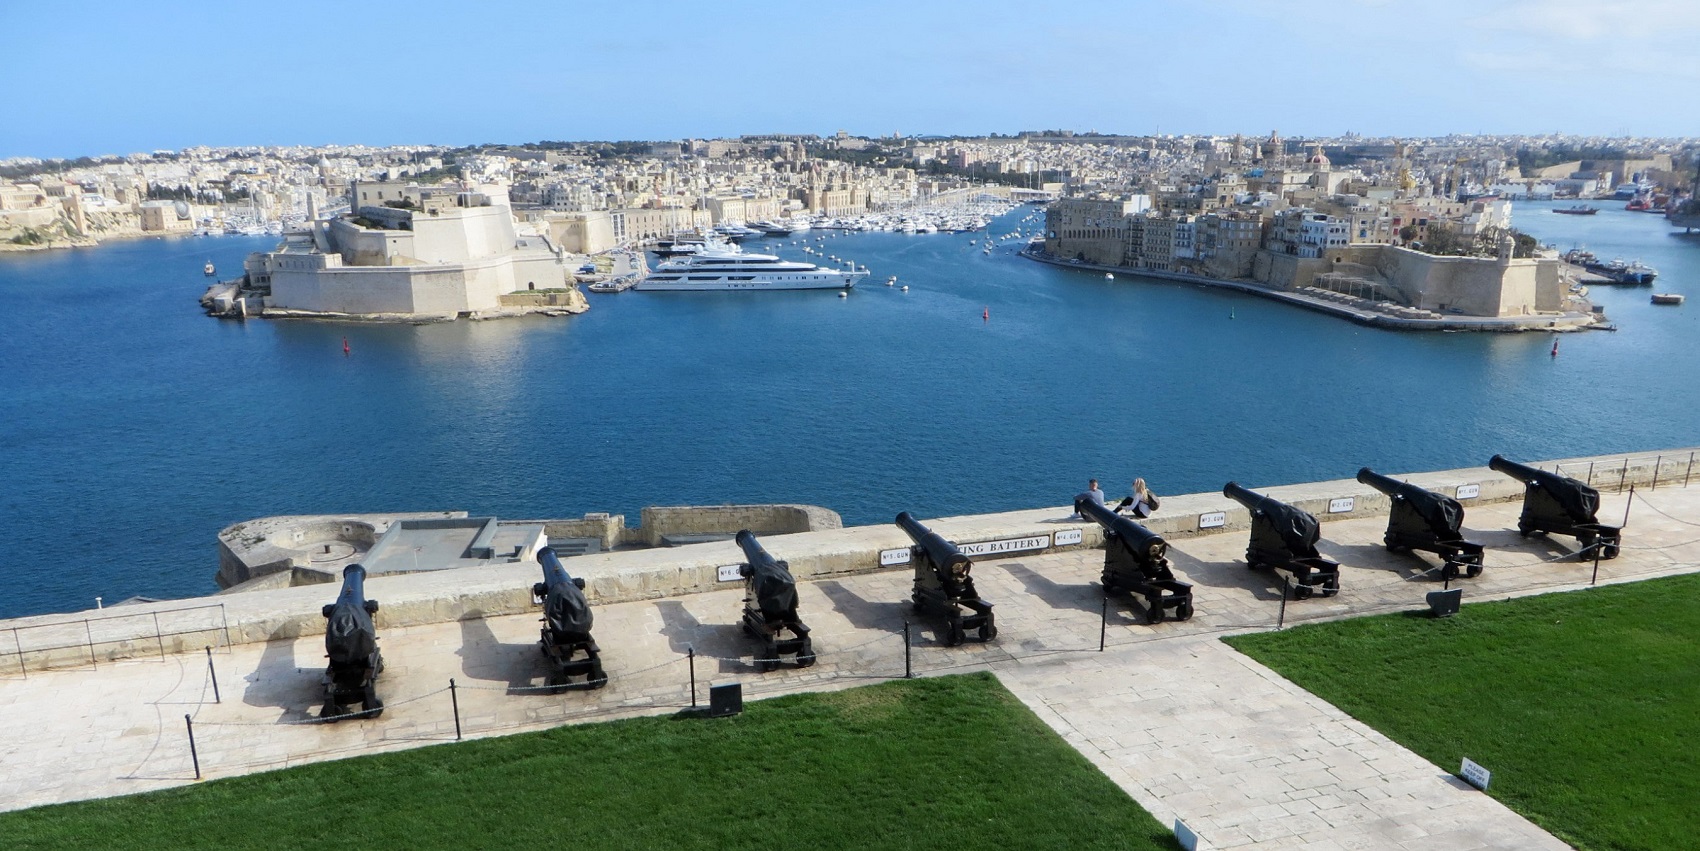 Malta Valletta Tours & Rentals